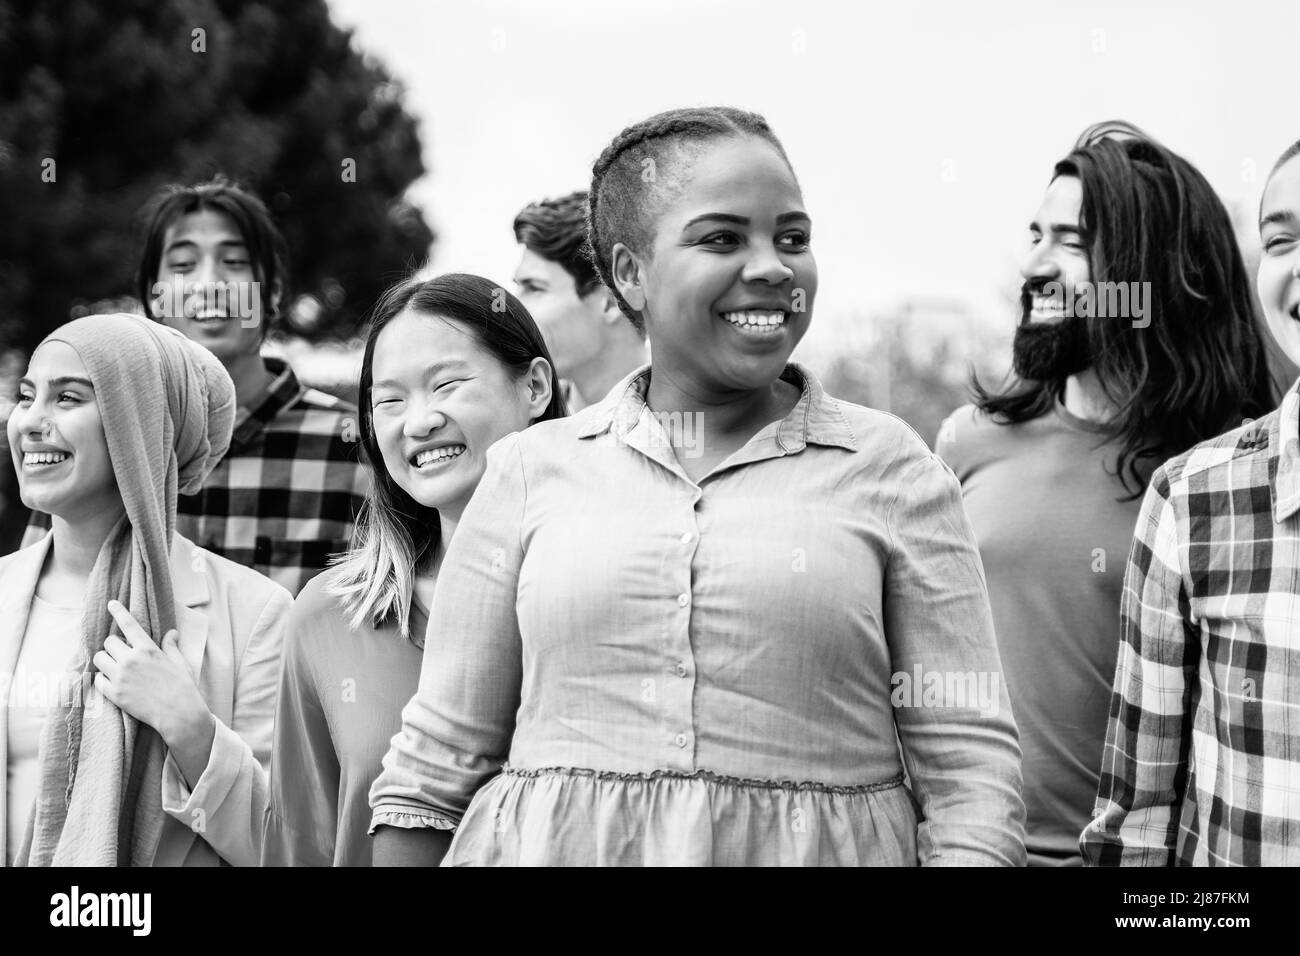 Multiethnische junge Menschen, die Spaß haben gemeinsam im Freien zu Fuß - Fokus auf asiatische Mädchen Gesicht - Schwarz-Weiß-Schnitt Stockfoto